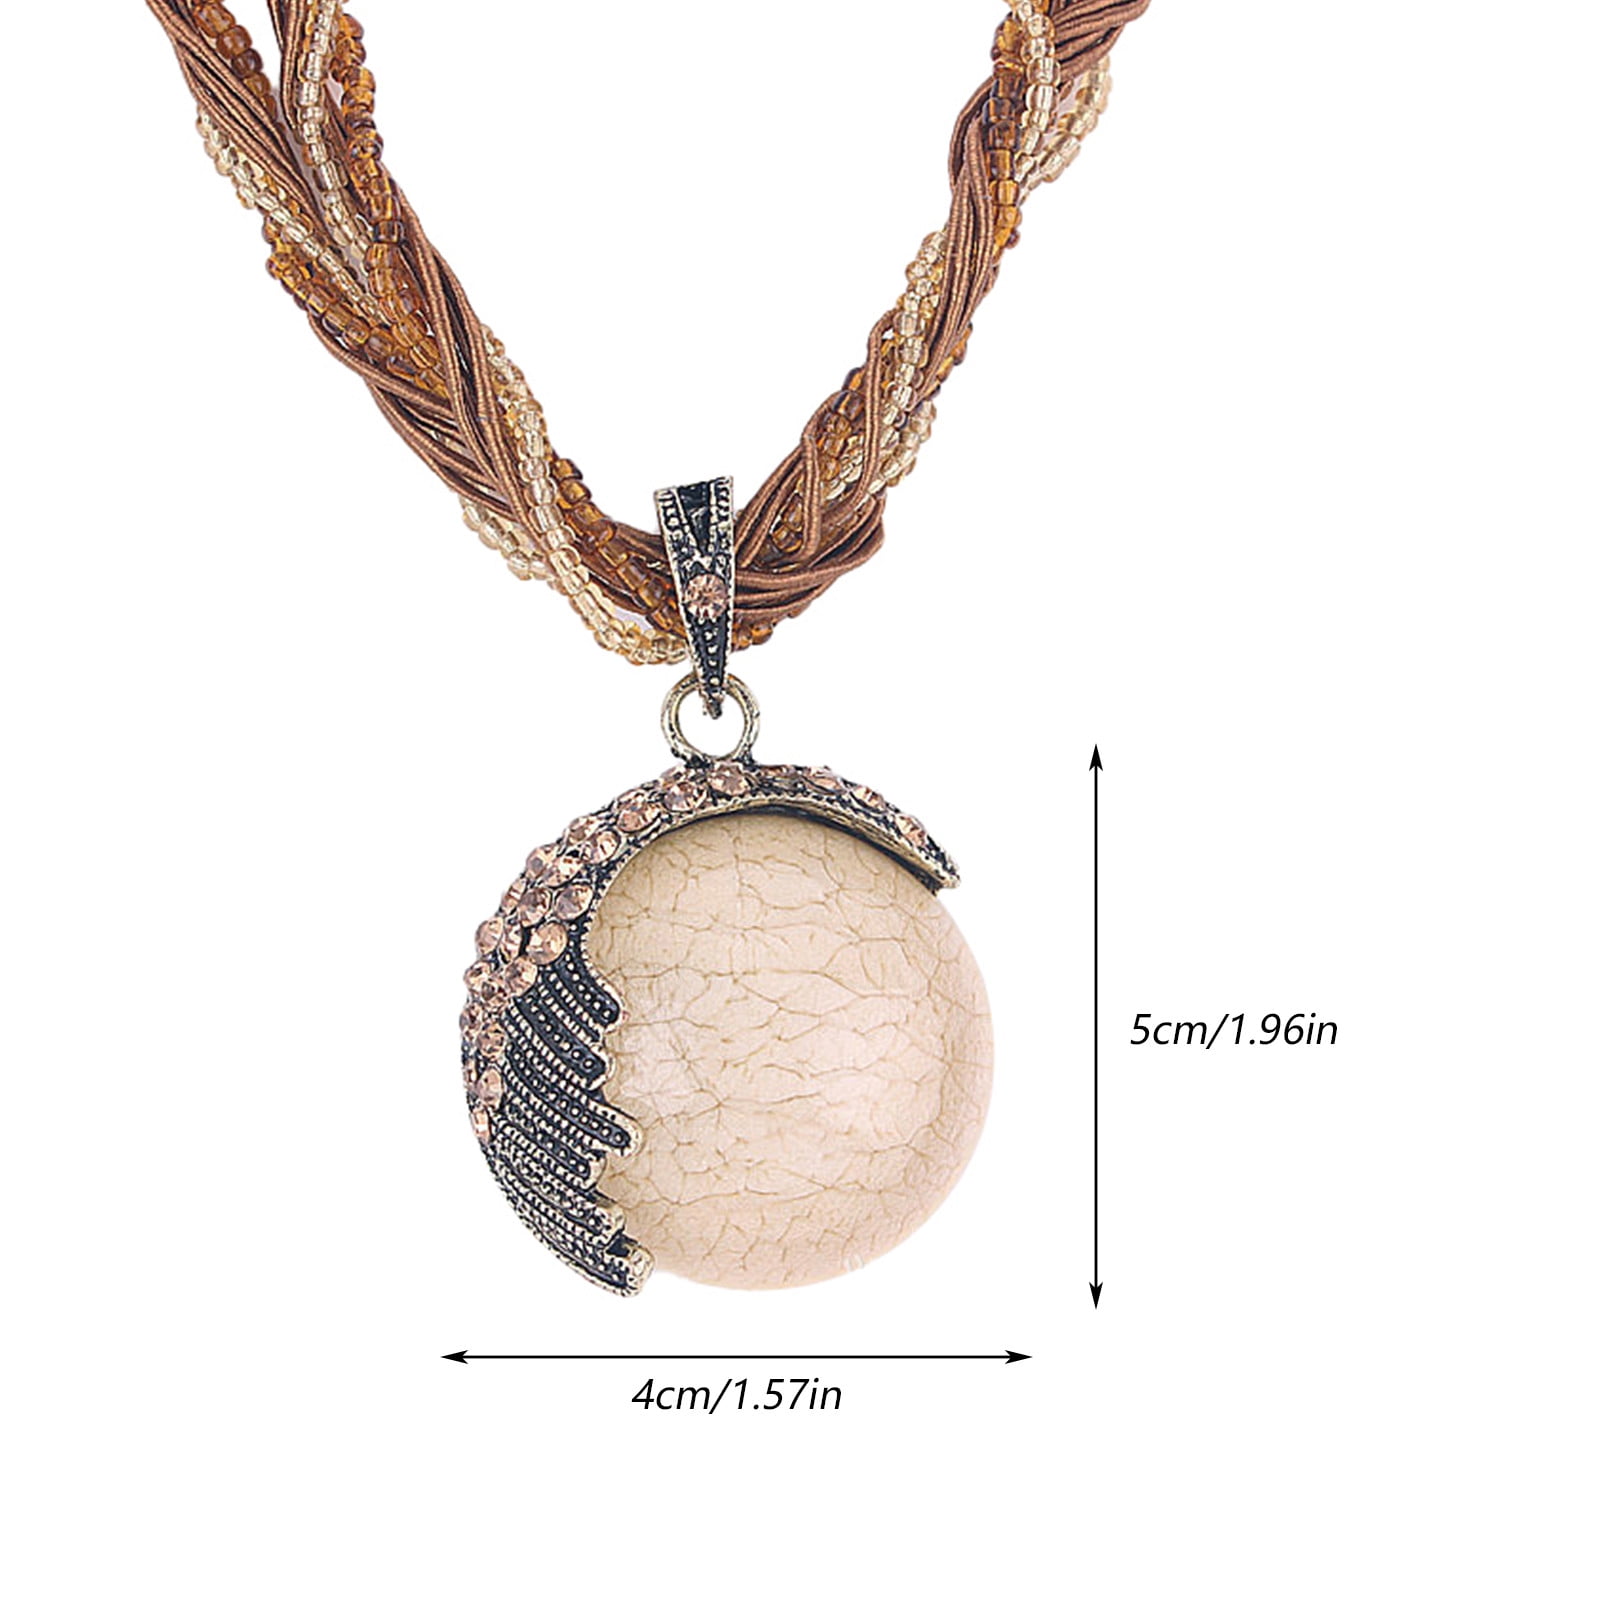 Fashion Rhinestone Peacock Statement Bib Chain Choker Pendant Necklace Jewelry